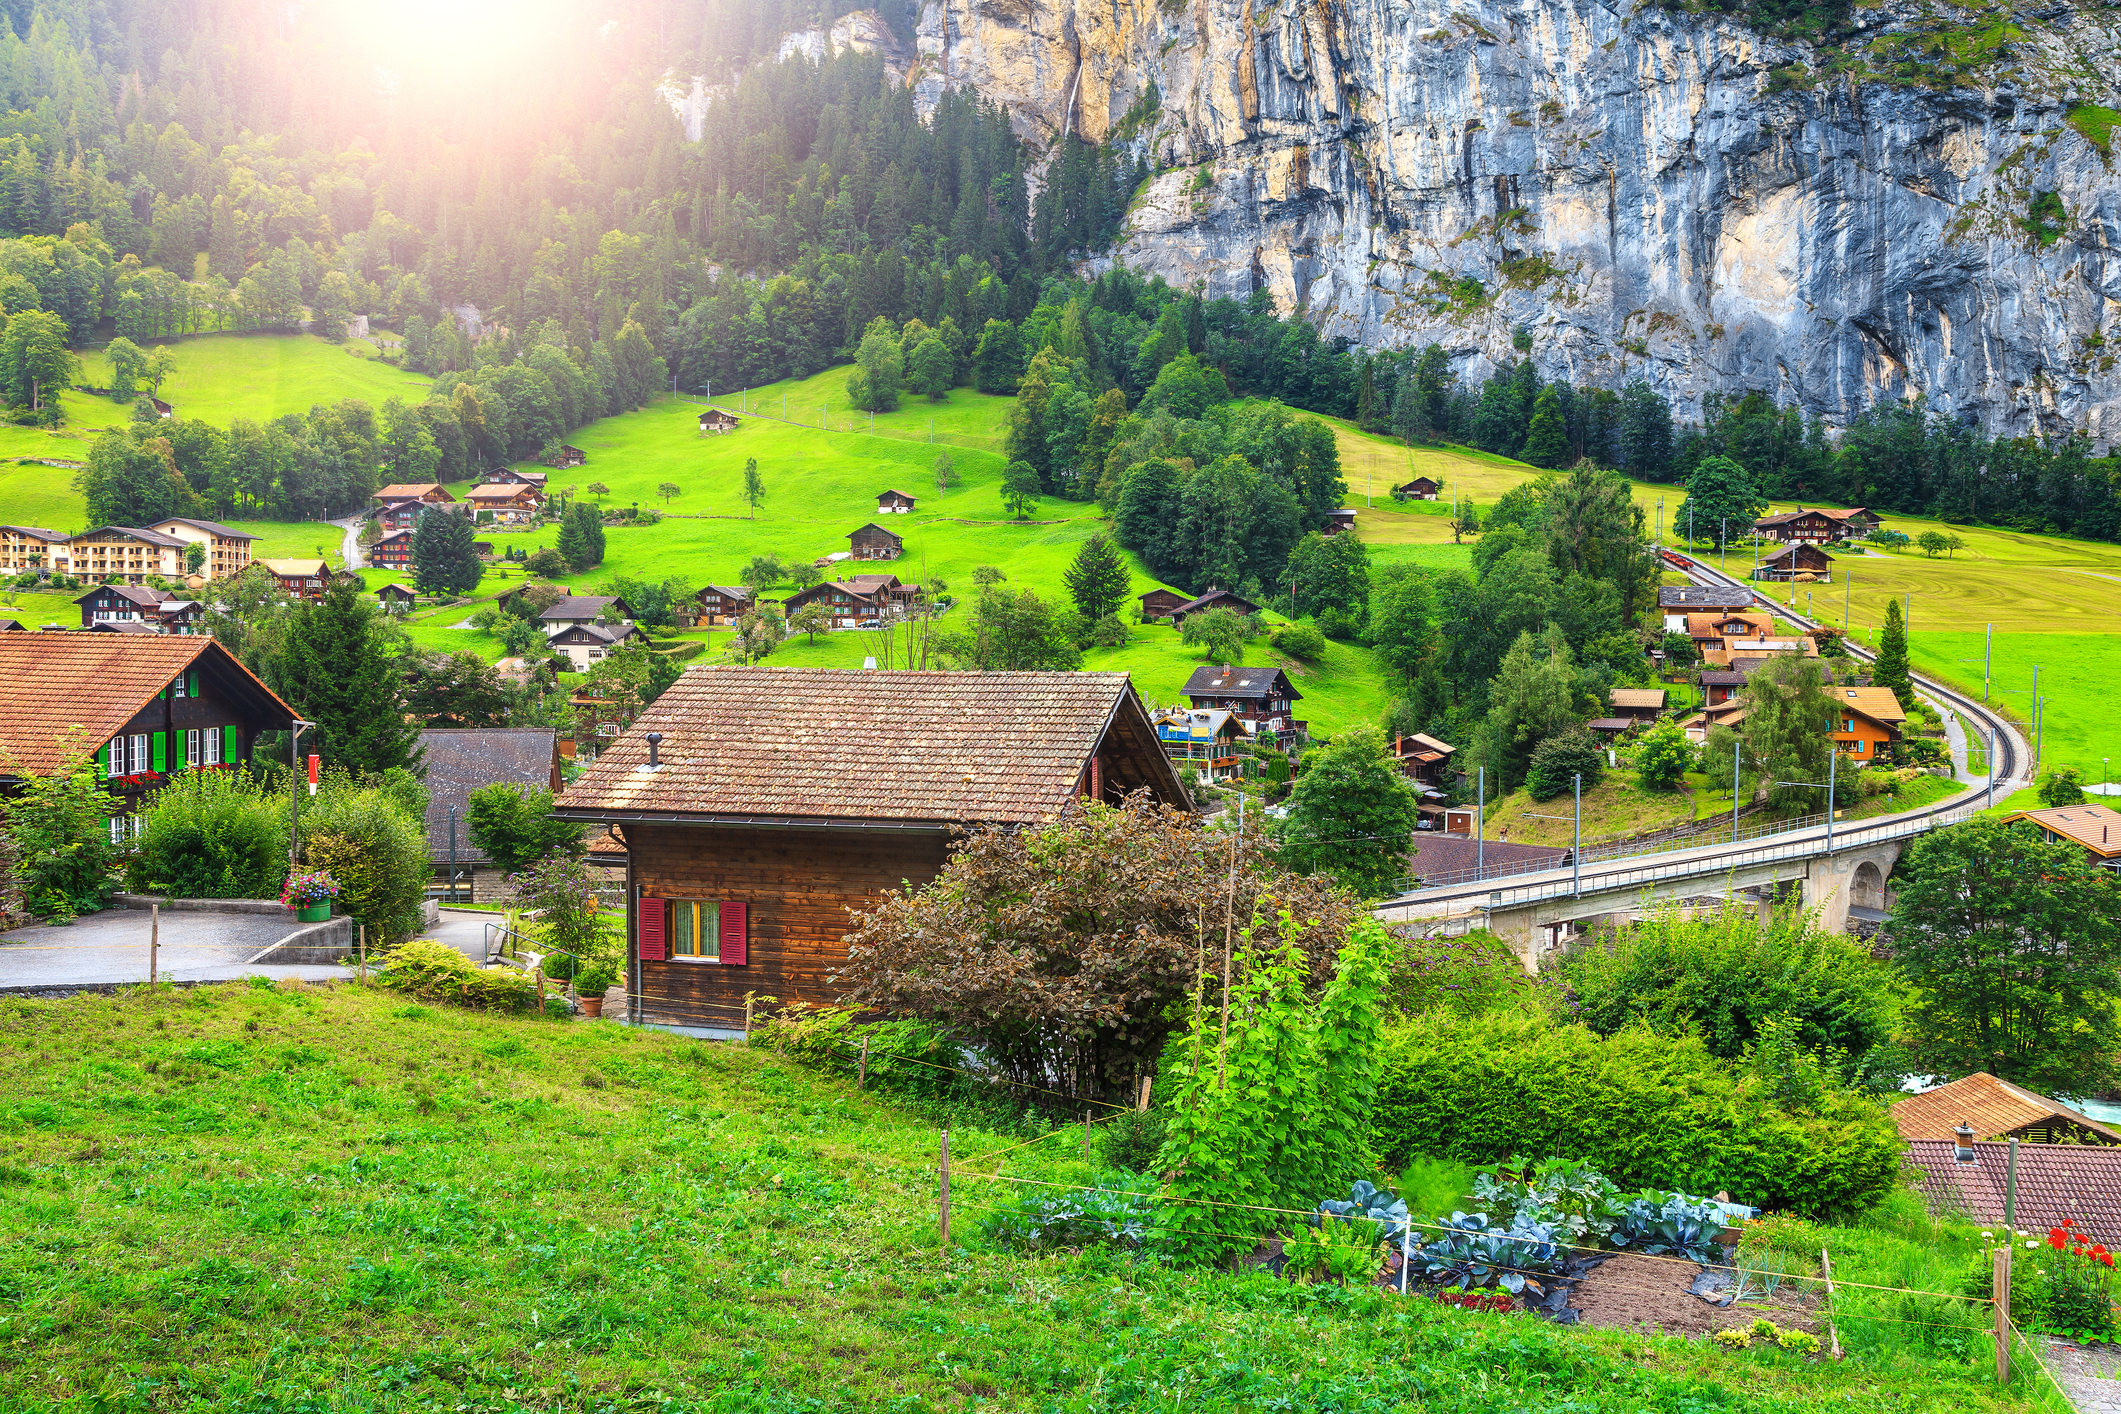 <p><strong>Швейцария</strong></p>

<p>Поддържането на активност е ключов фактор за доброто здраве в Швейцария, а планините действат като детска площадка за местните жители. Освен това, швейцарците се гордеят и с голямата си сплотена общност.</p>